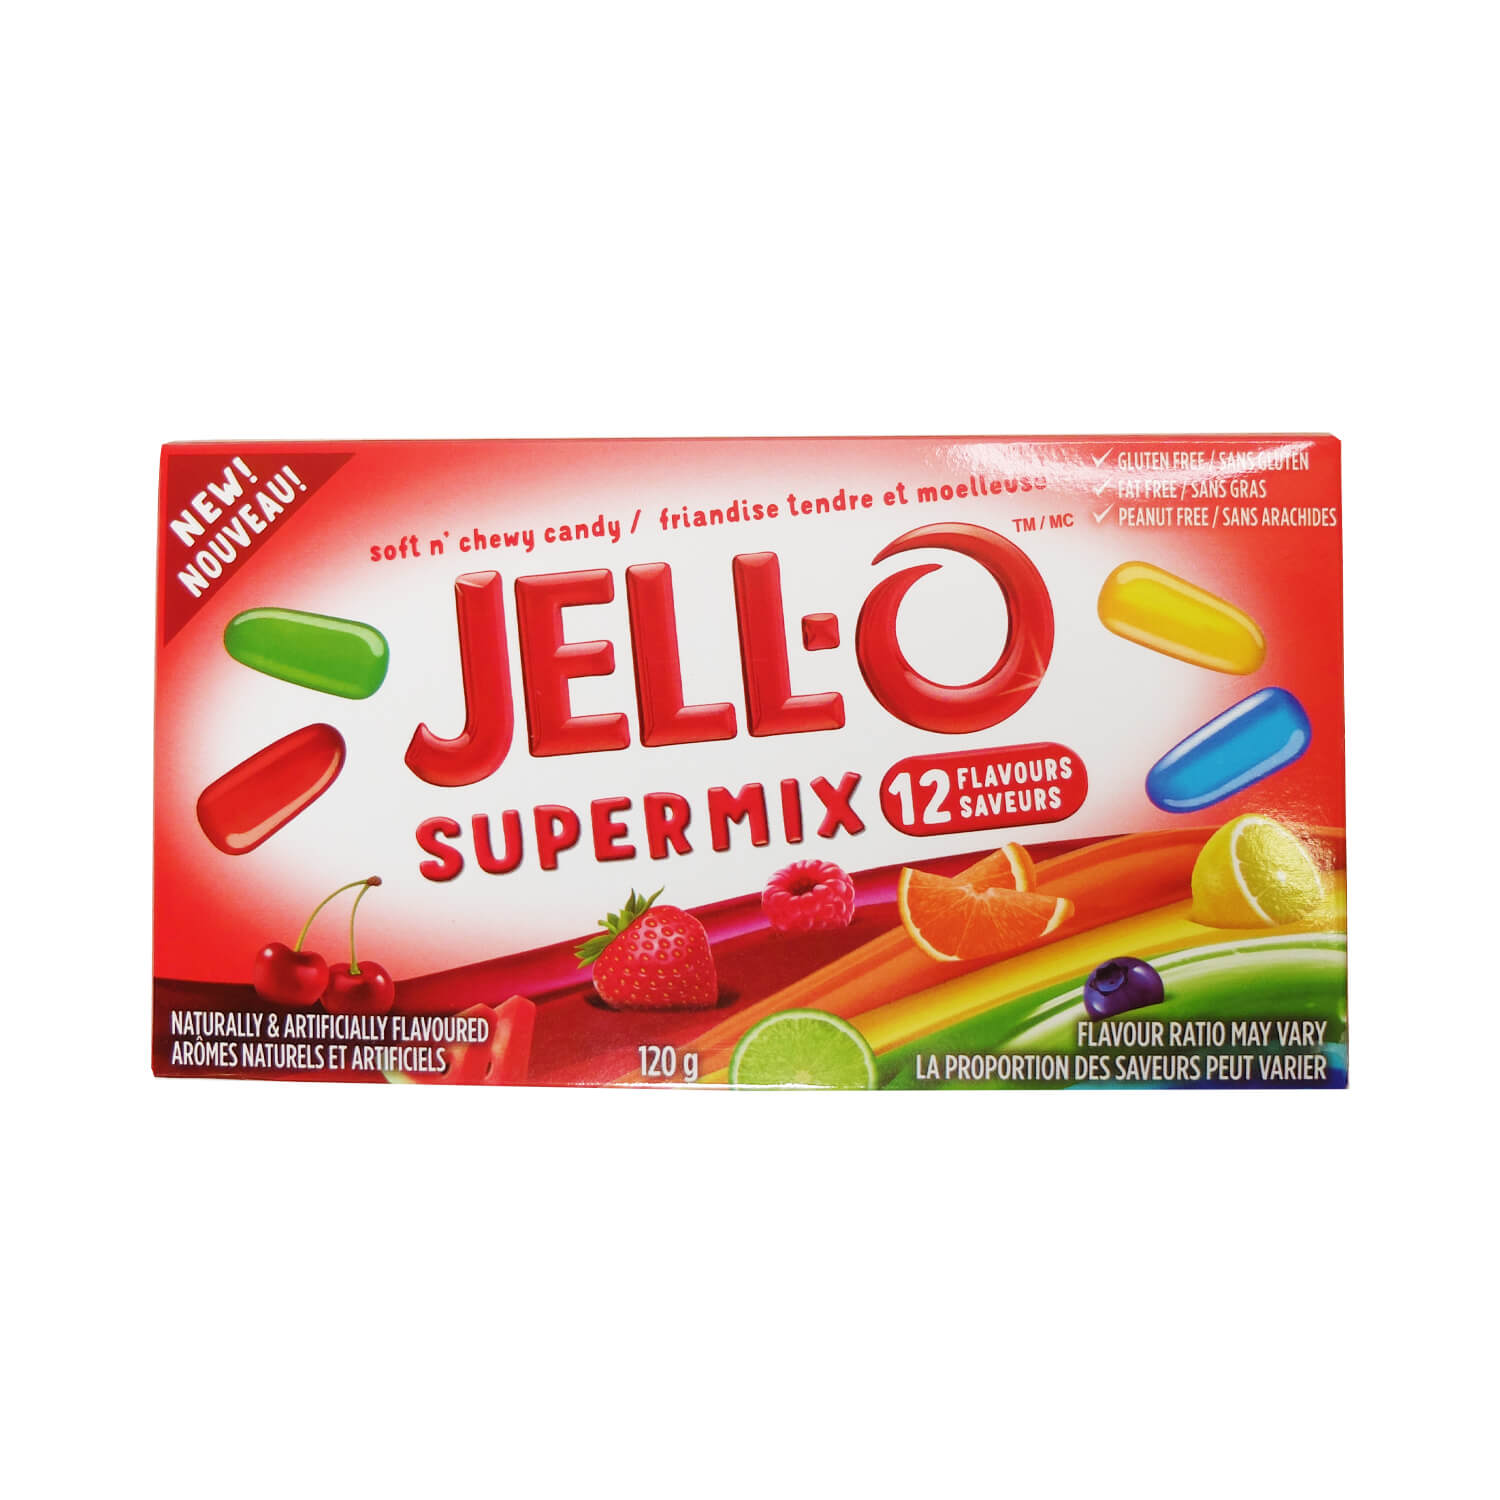 «Jell-O» Supermix 12 saveurs - 12 x 120 g